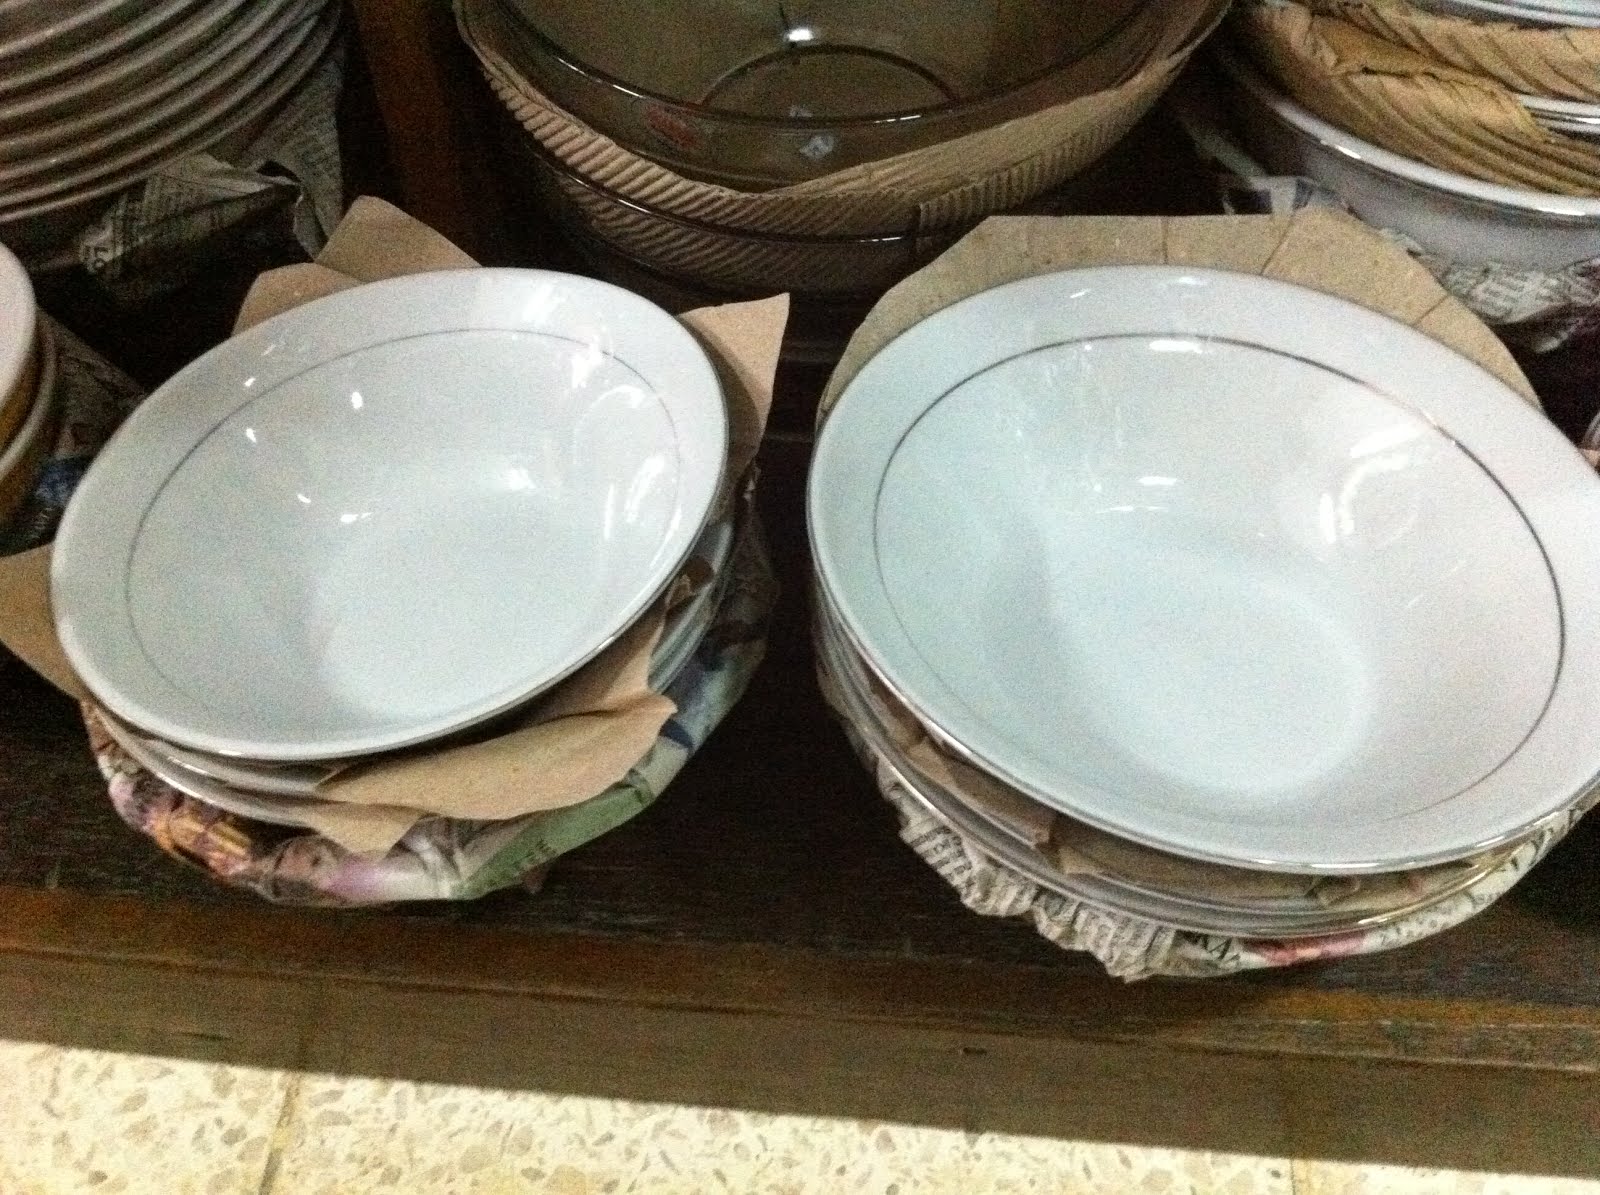 HARMONI - Houseware & Kitchenware in Balikpapan: Mangkuk 